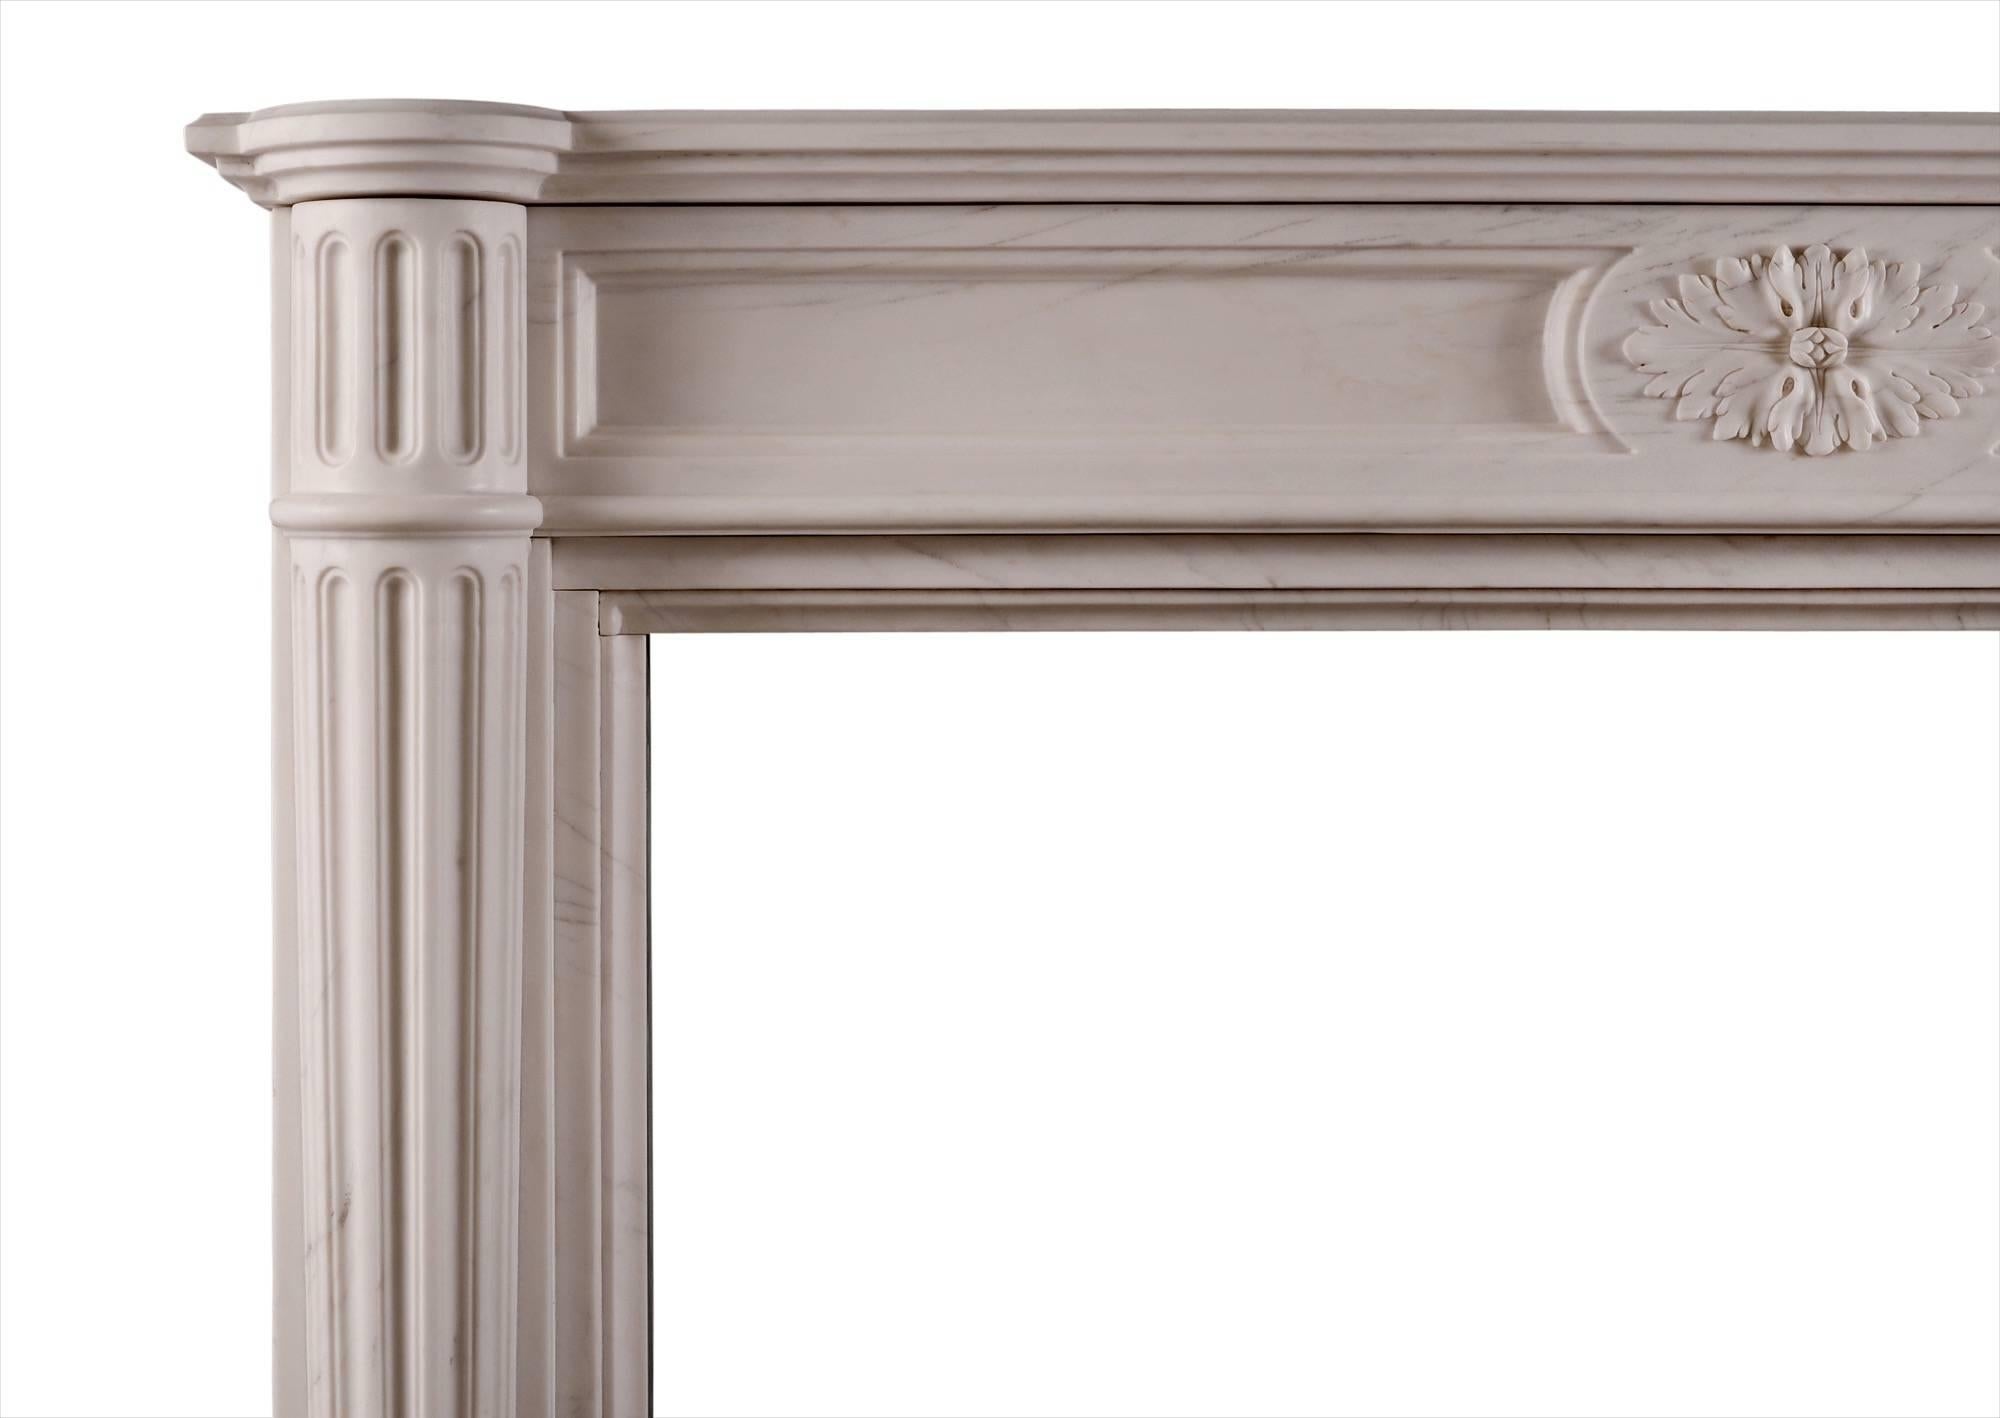 Ein französischer Kamin aus weißem Marmor im Louis-XVI-Stil. Der getäfelte Fries mit ovaler Mittelpatera. Halbrunde, spitz zulaufende Säulen, die von passenden kannelierten Blöcken gekrönt werden, darüber ein profiliertes Regal. Eine Kopie eines